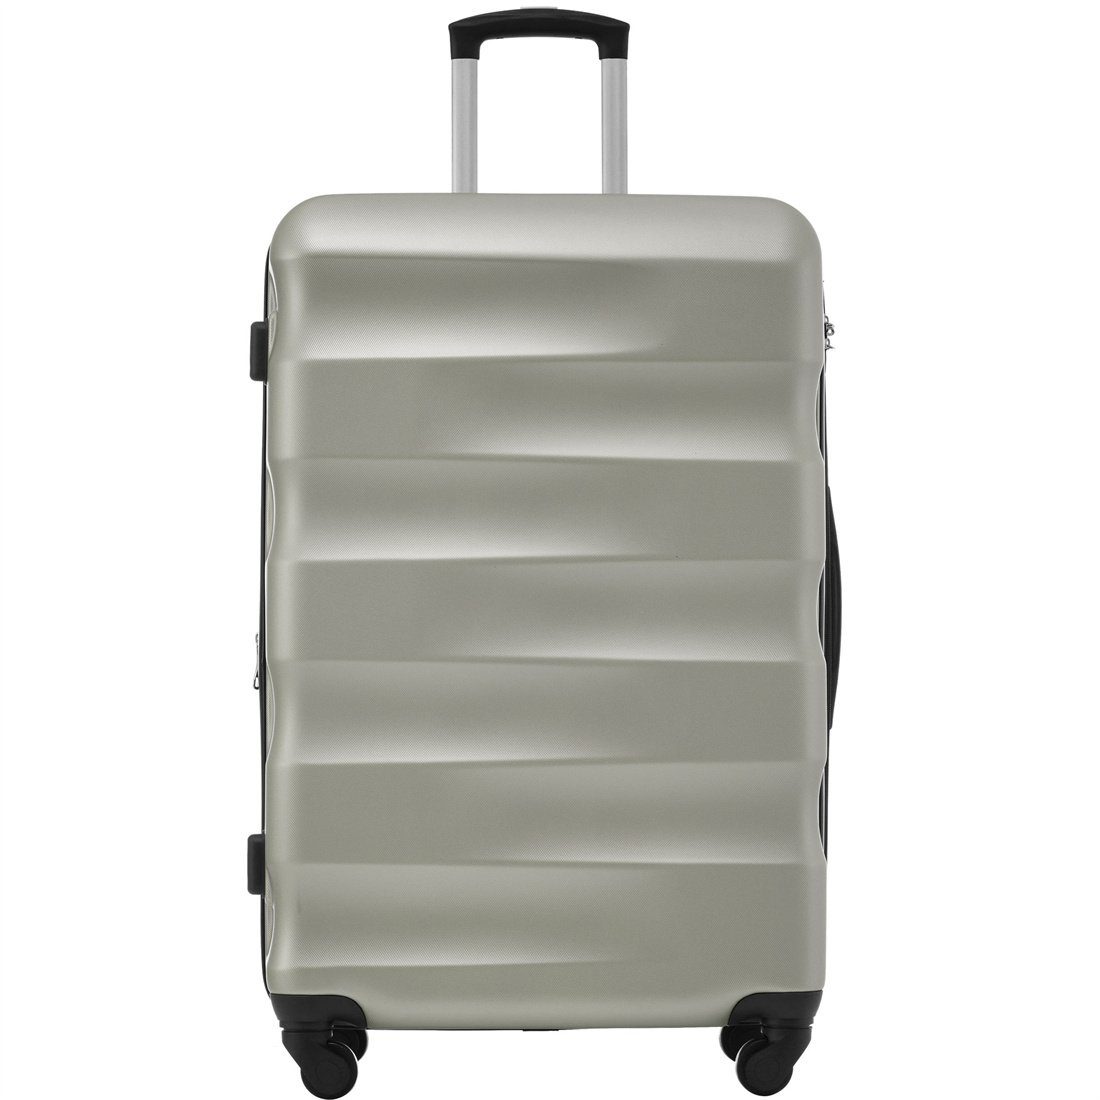 Koffer DÖRÖY Reisekoffer, Hartschalen-Koffer, 69*44.5*26.5cm, Goldgrün ABS-Material